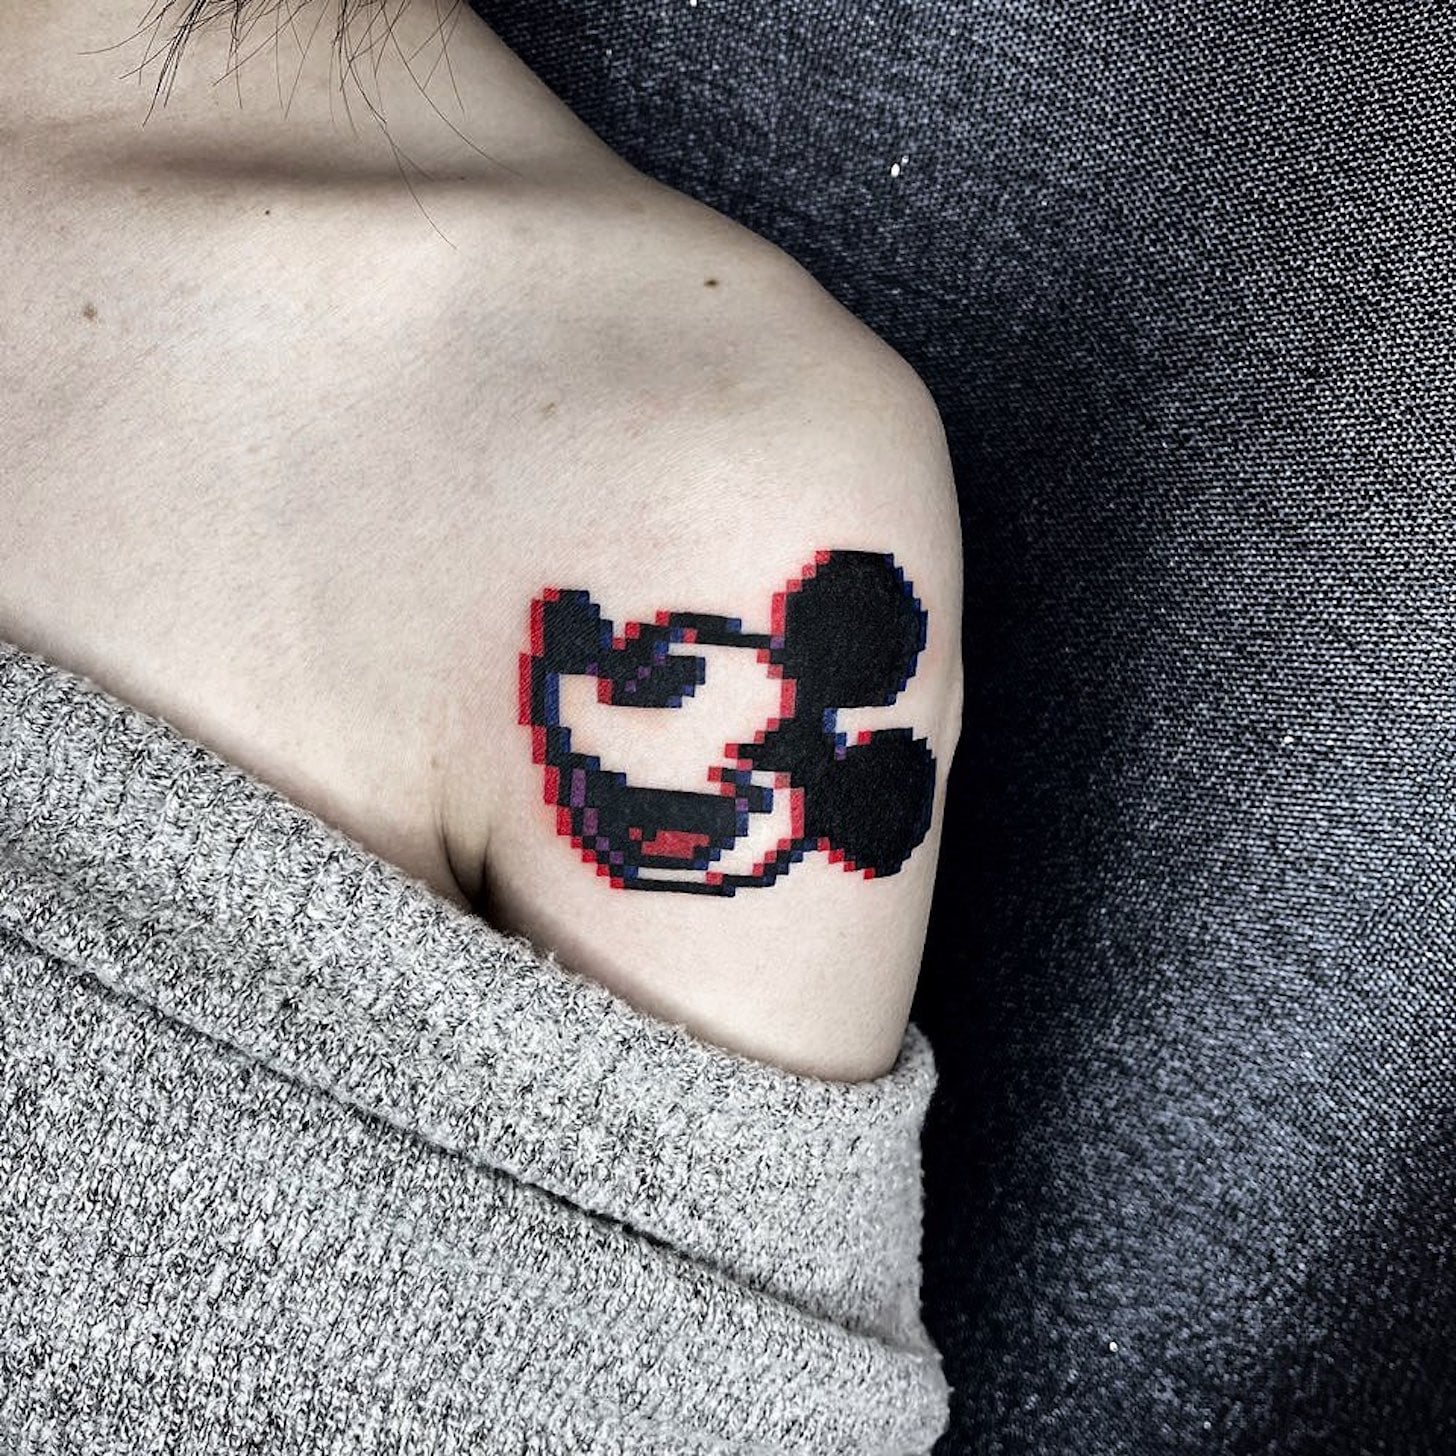 41 Cool Mickey Mouse Tattoos  Tattoo Designs  TattoosBagcom